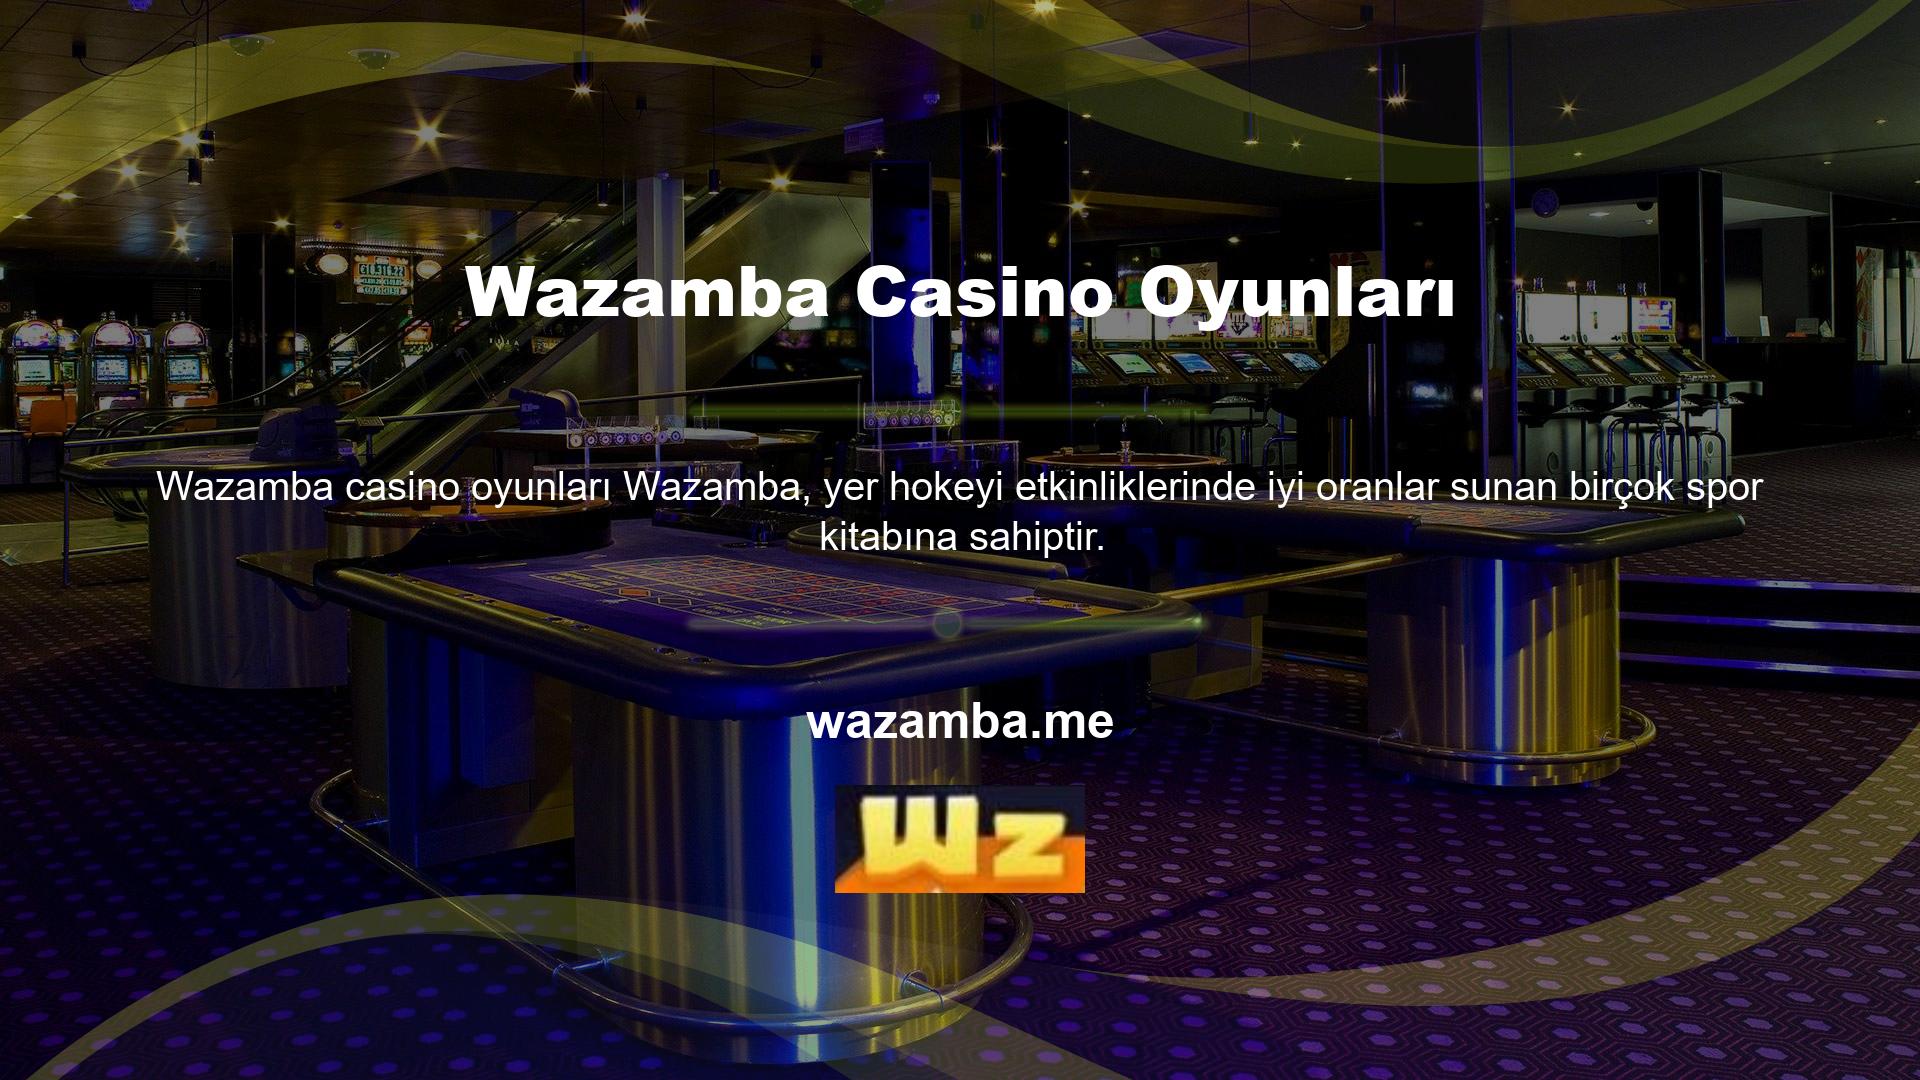 Wazamba, son derece düşük komisyon miktarları, gelişmiş para yatırma yöntemleri, göz alıcı bisiklet şeklindeki ödülleri ve oyun deneyimi ile hizmetiyle birçok casino oyununda eşsizdir